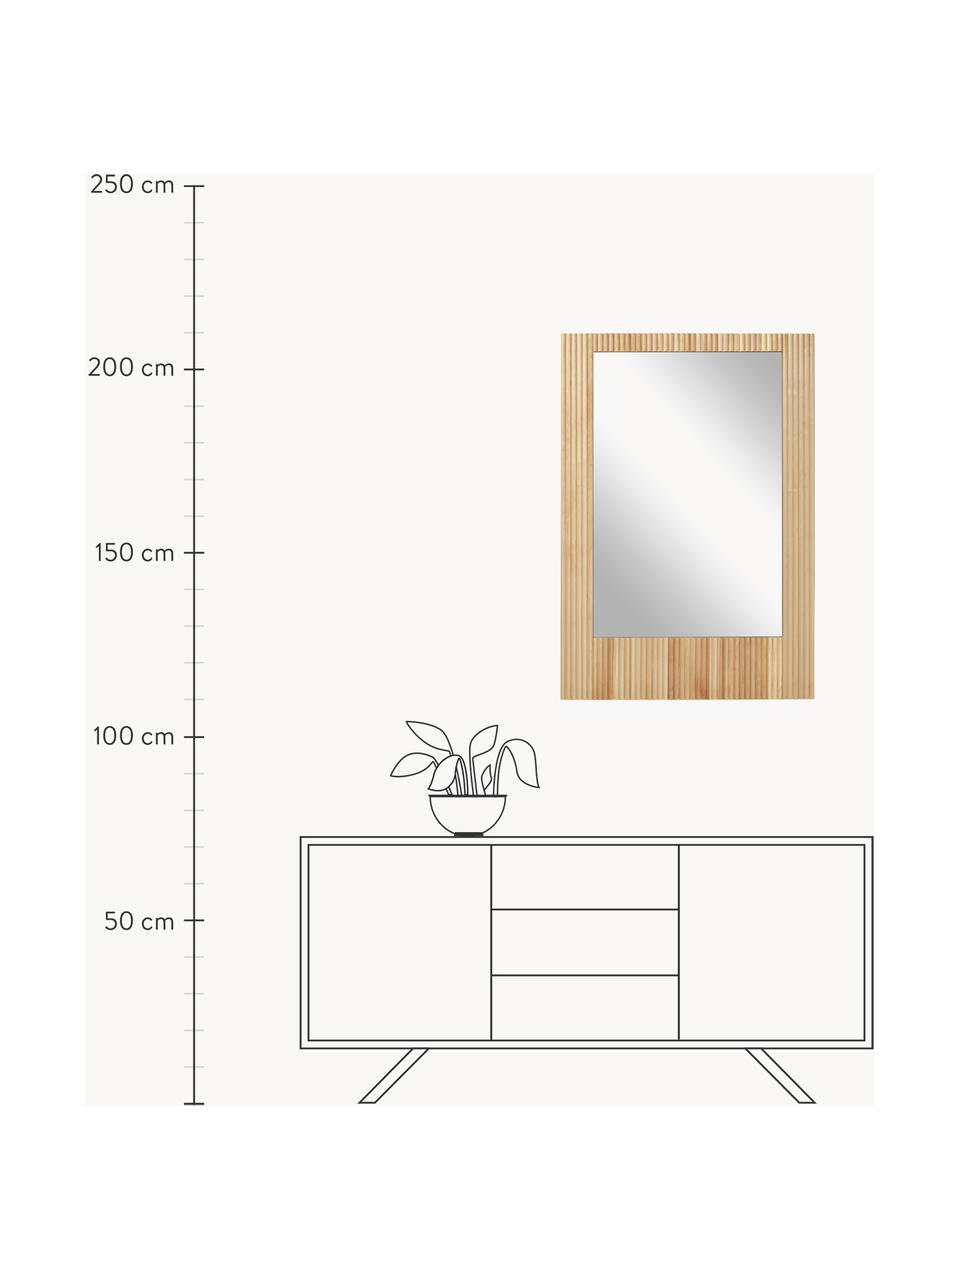 Wandspiegel Nele mit geriffelter Birkenholz-Umrandung, Rahmen: Birkenholz, Rückseite: Mitteldichte Holzfaserpla, Spiegelfläche: Spiegelglas, Birkenholz, B 70 x H 100 cm